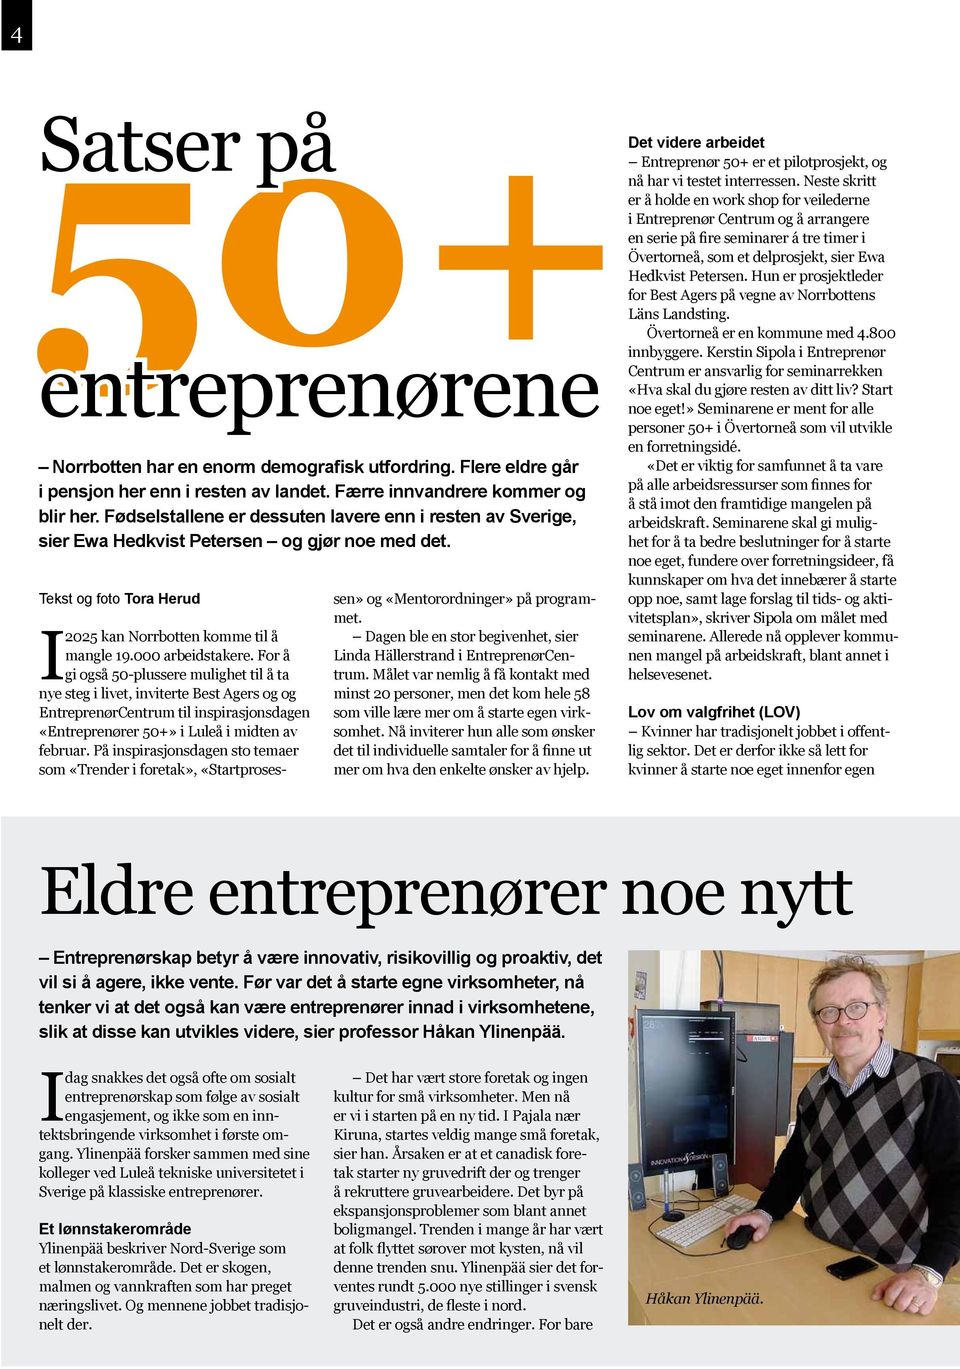 For å gi også 50-plussere mulighet til å ta nye steg i livet, inviterte Best Agers og og EntreprenørCentrum til inspirasjonsdagen «Entreprenører 50+» i Luleå i midten av februar.